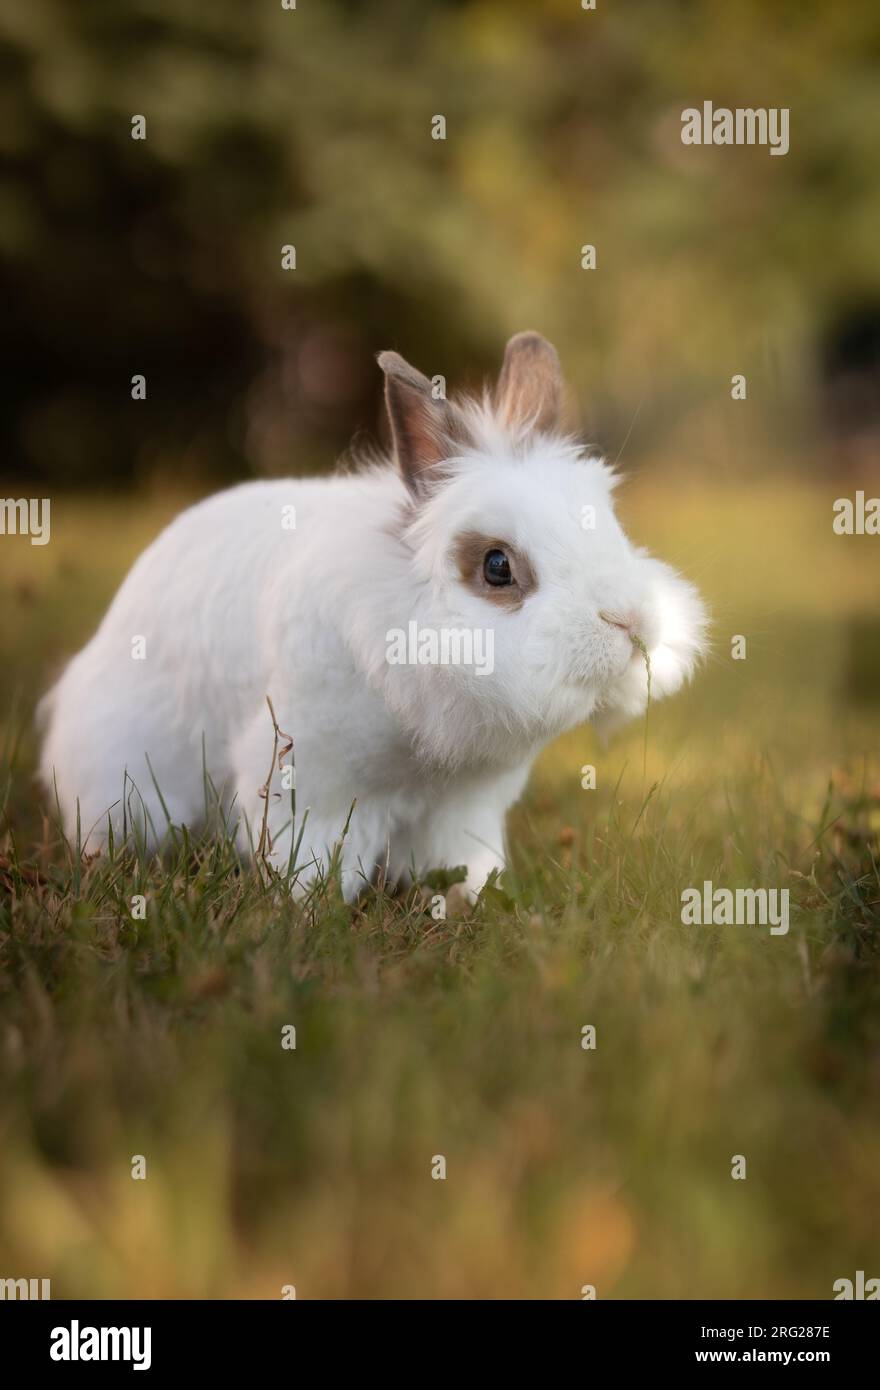 Portrait vertical de Lionhead Rabbit à l'extérieur dans le jardin. Mignon lapin blanc sur l'herbe. Adorable petit animal domestique extérieur. Banque D'Images